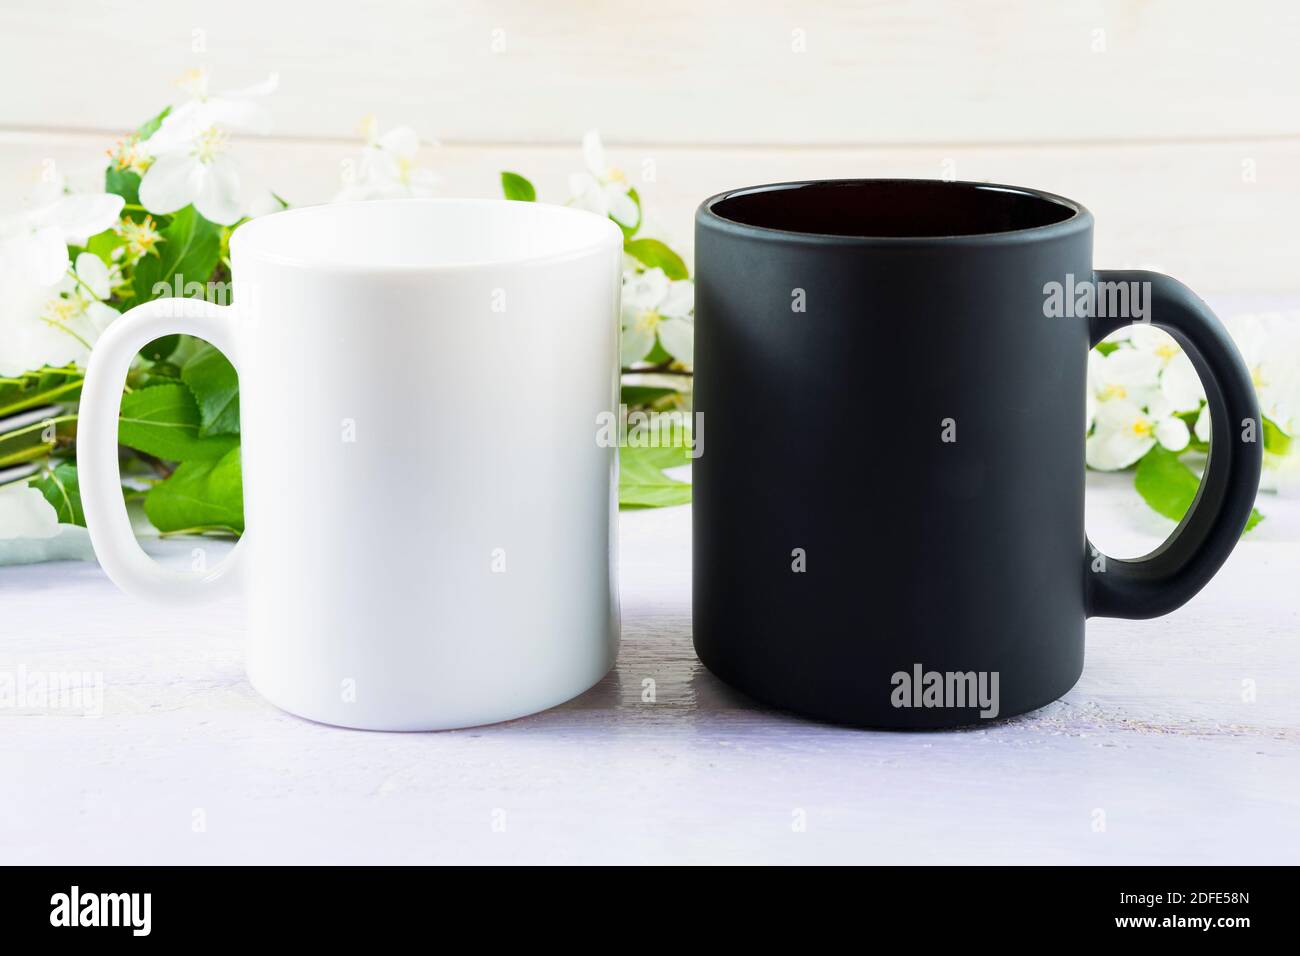 Tasse blanche et noire avec fleur de pomme printanière. Maquette de tasse à café. Vider la maquette de tasse pour la présentation des produits. Banque D'Images